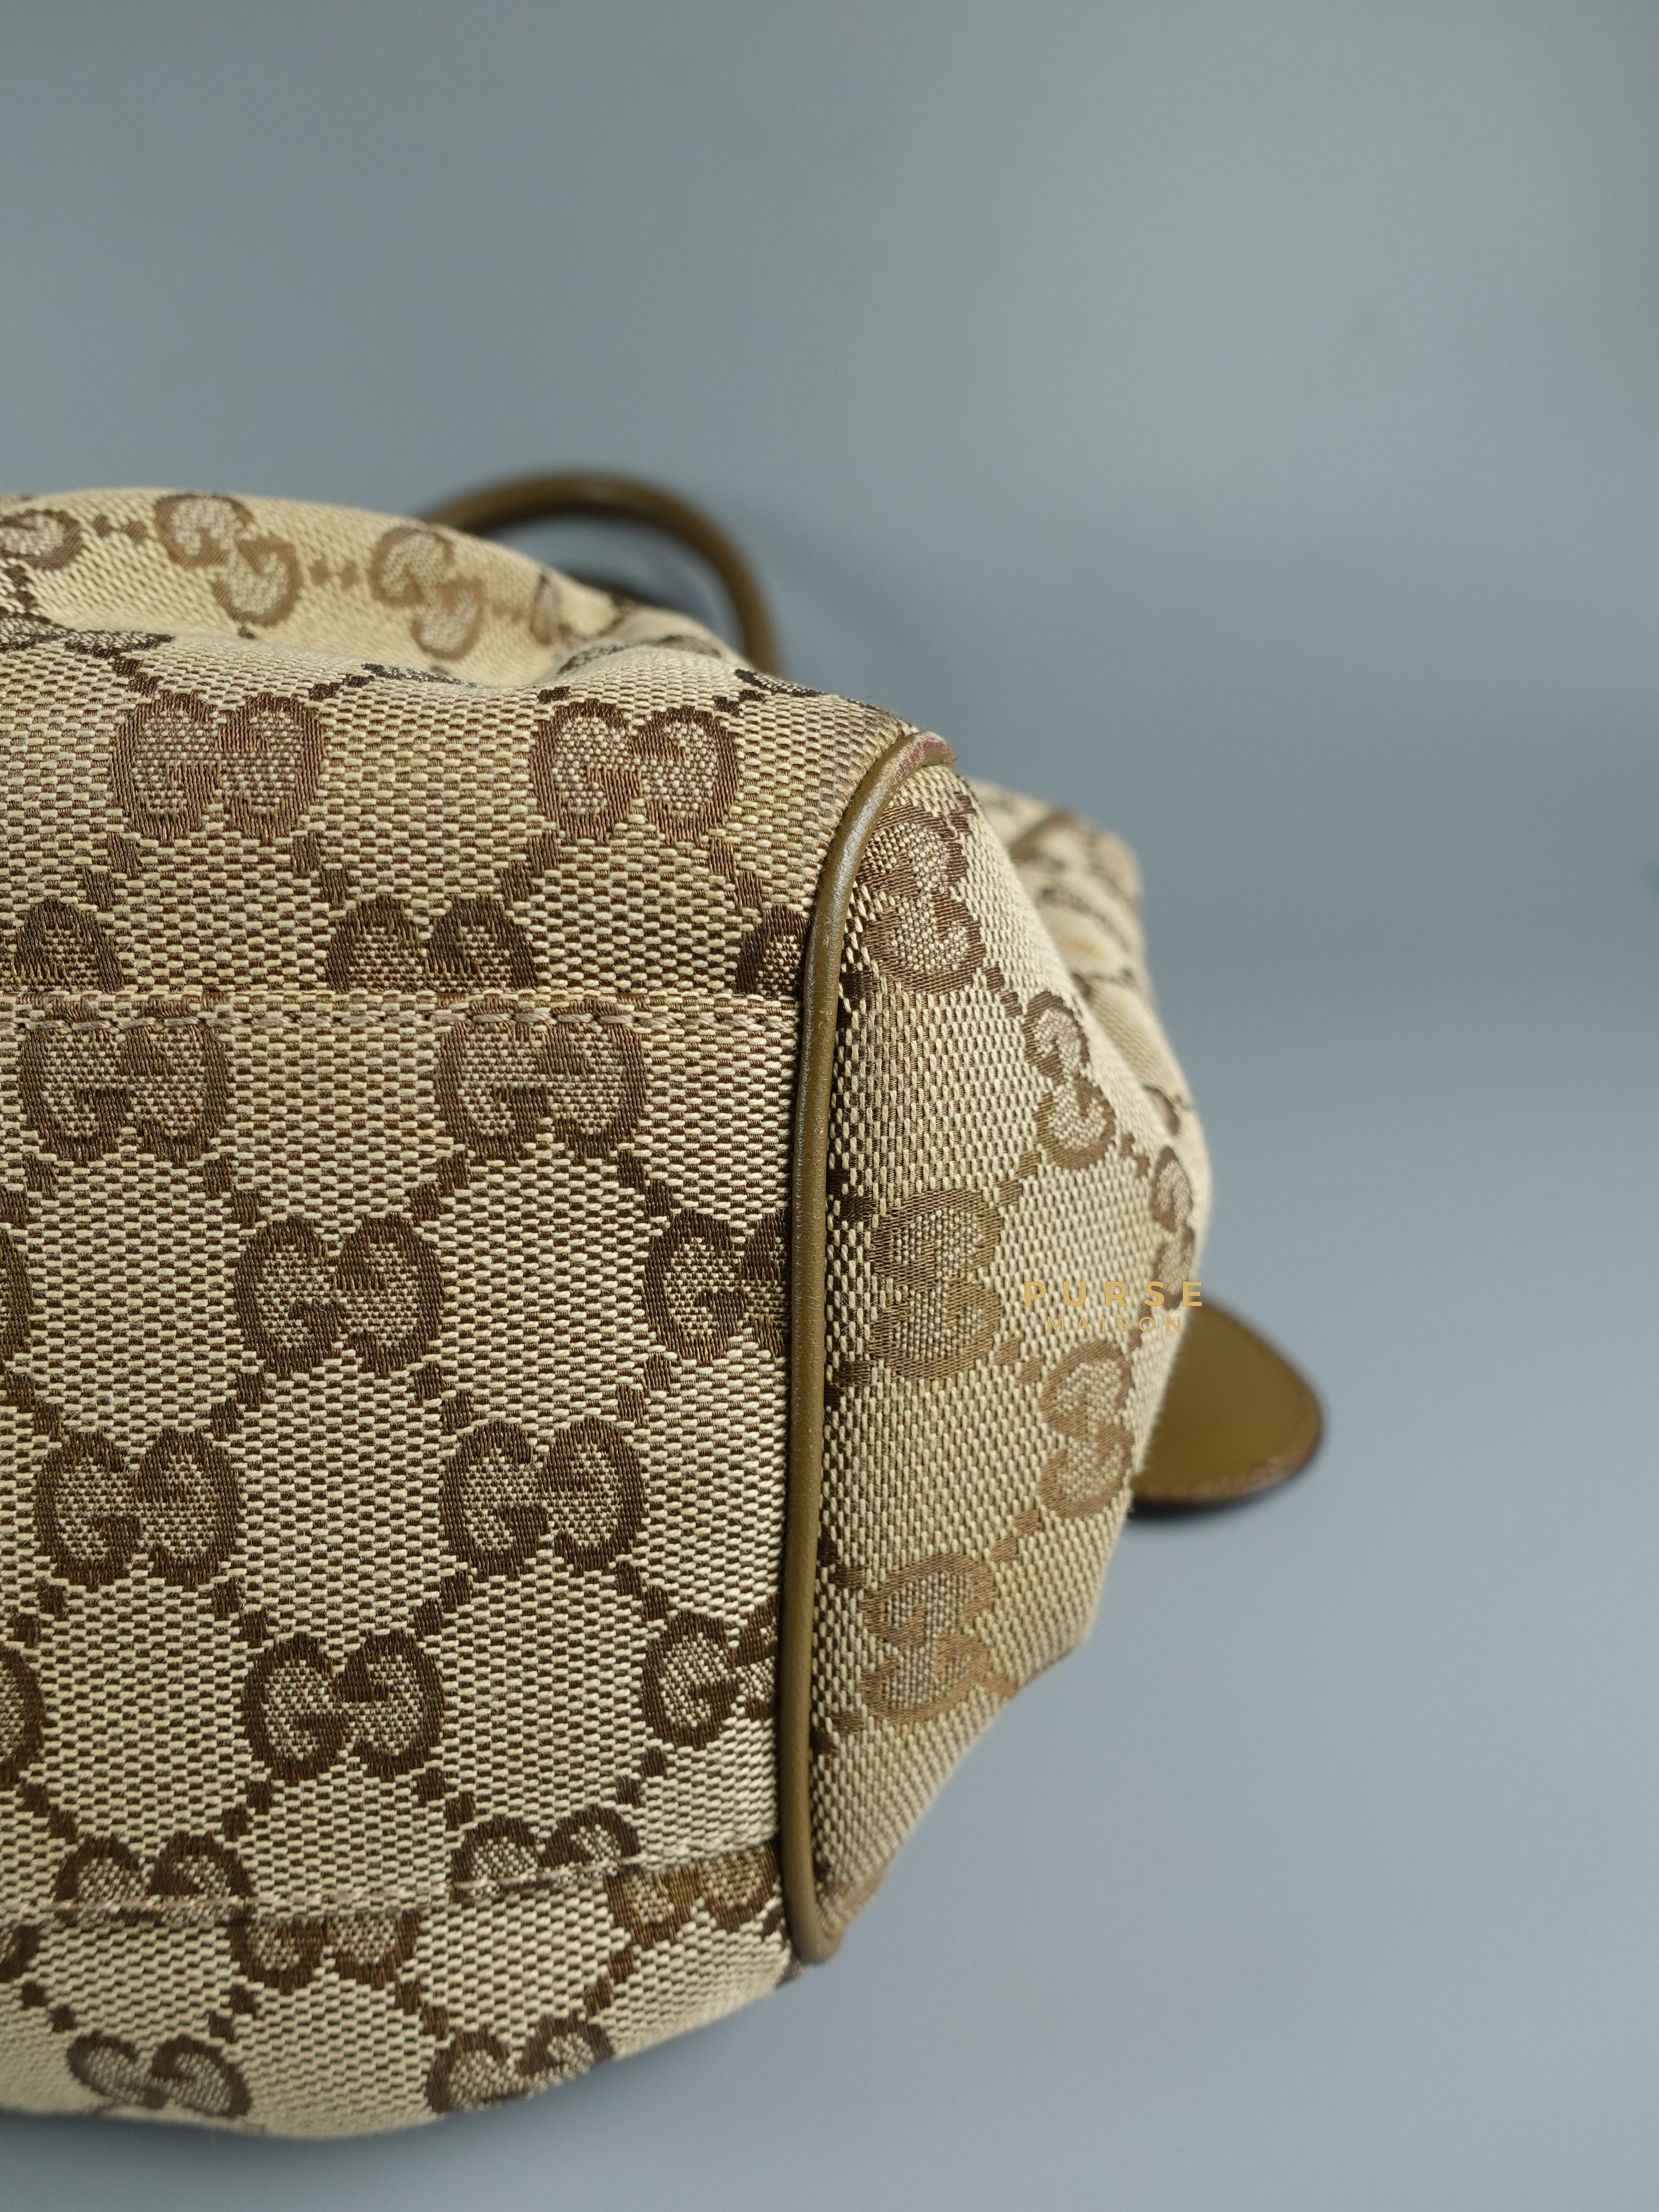 Gucci GG Canvas Sukey Shoulder Tote Bag | Purse Maison Luxury Bags Shop